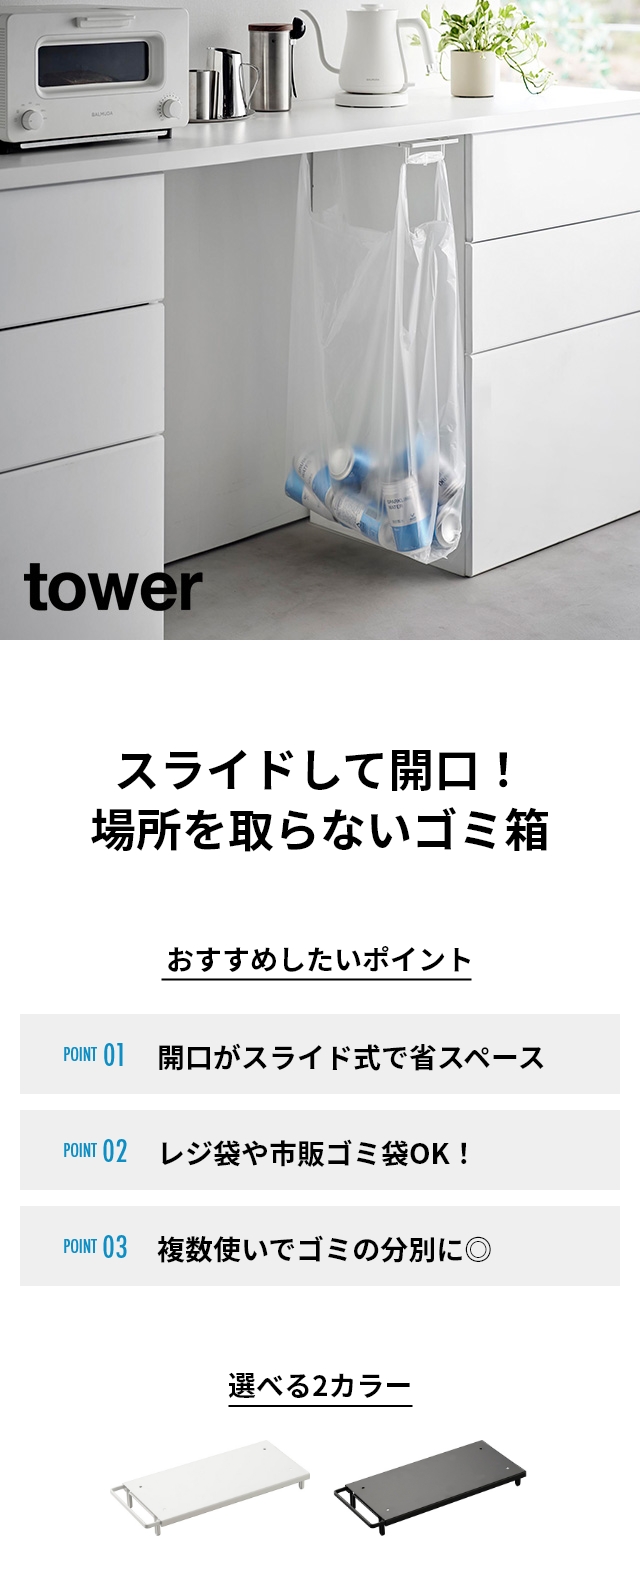 tower（タワー）テーブル下レジ袋ハンガー